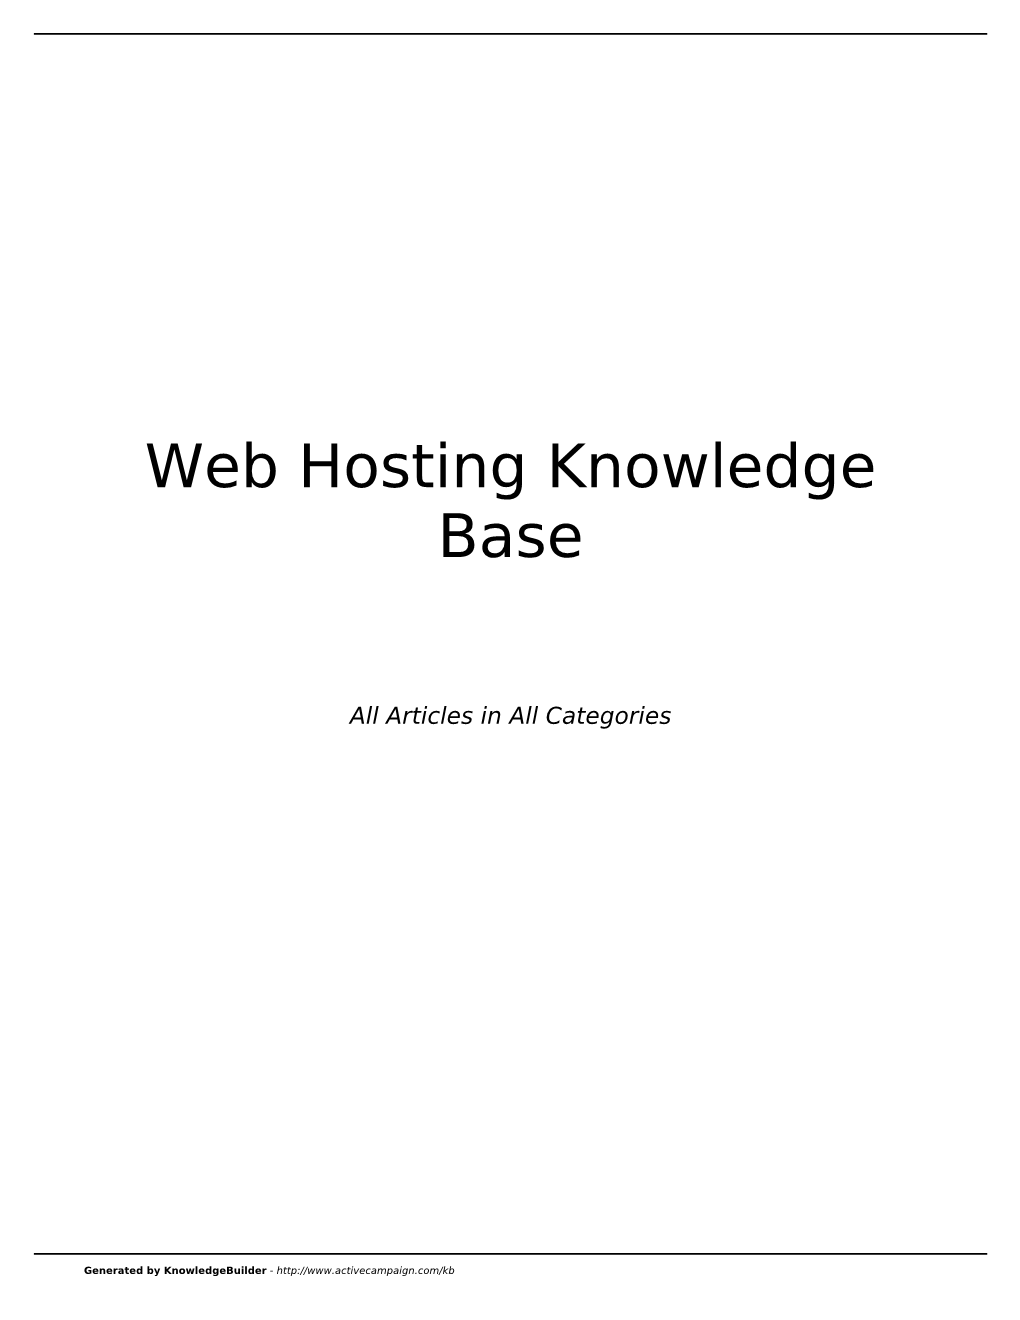 Web Hosting Knowledge Base